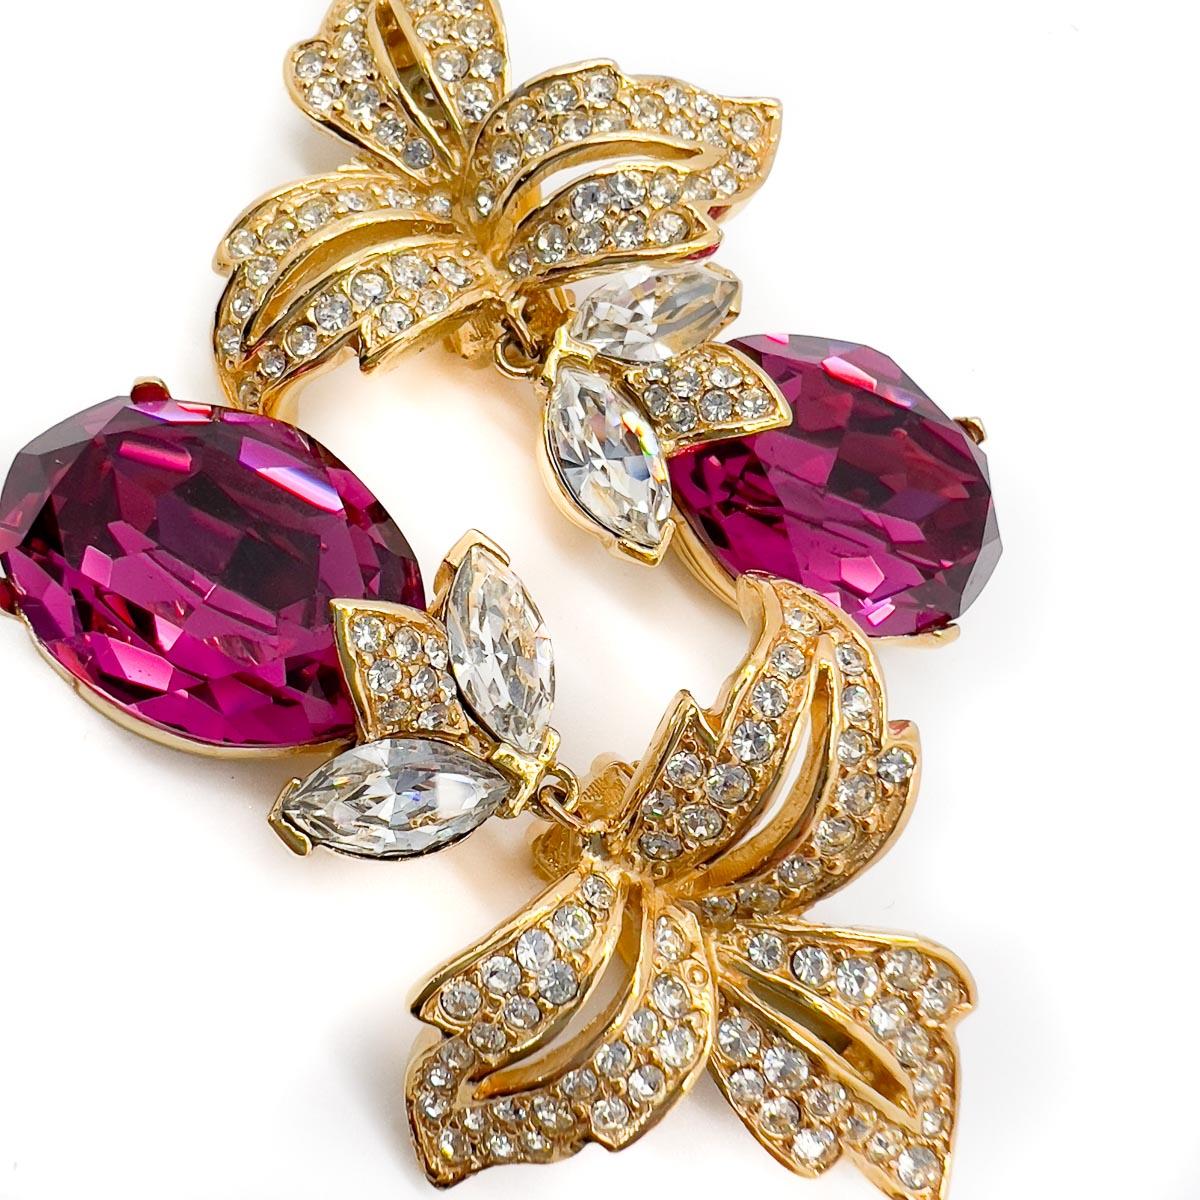 Une spectaculaire paire de boucles d'oreilles vintage Ciner rose vif avec d'énormes cristaux rose vif en goutte. La boucle d'oreille idéale pour les occasions, proposée par l'une des meilleures maisons de bijoux fantaisie d'Amérique.

Depuis 1982,